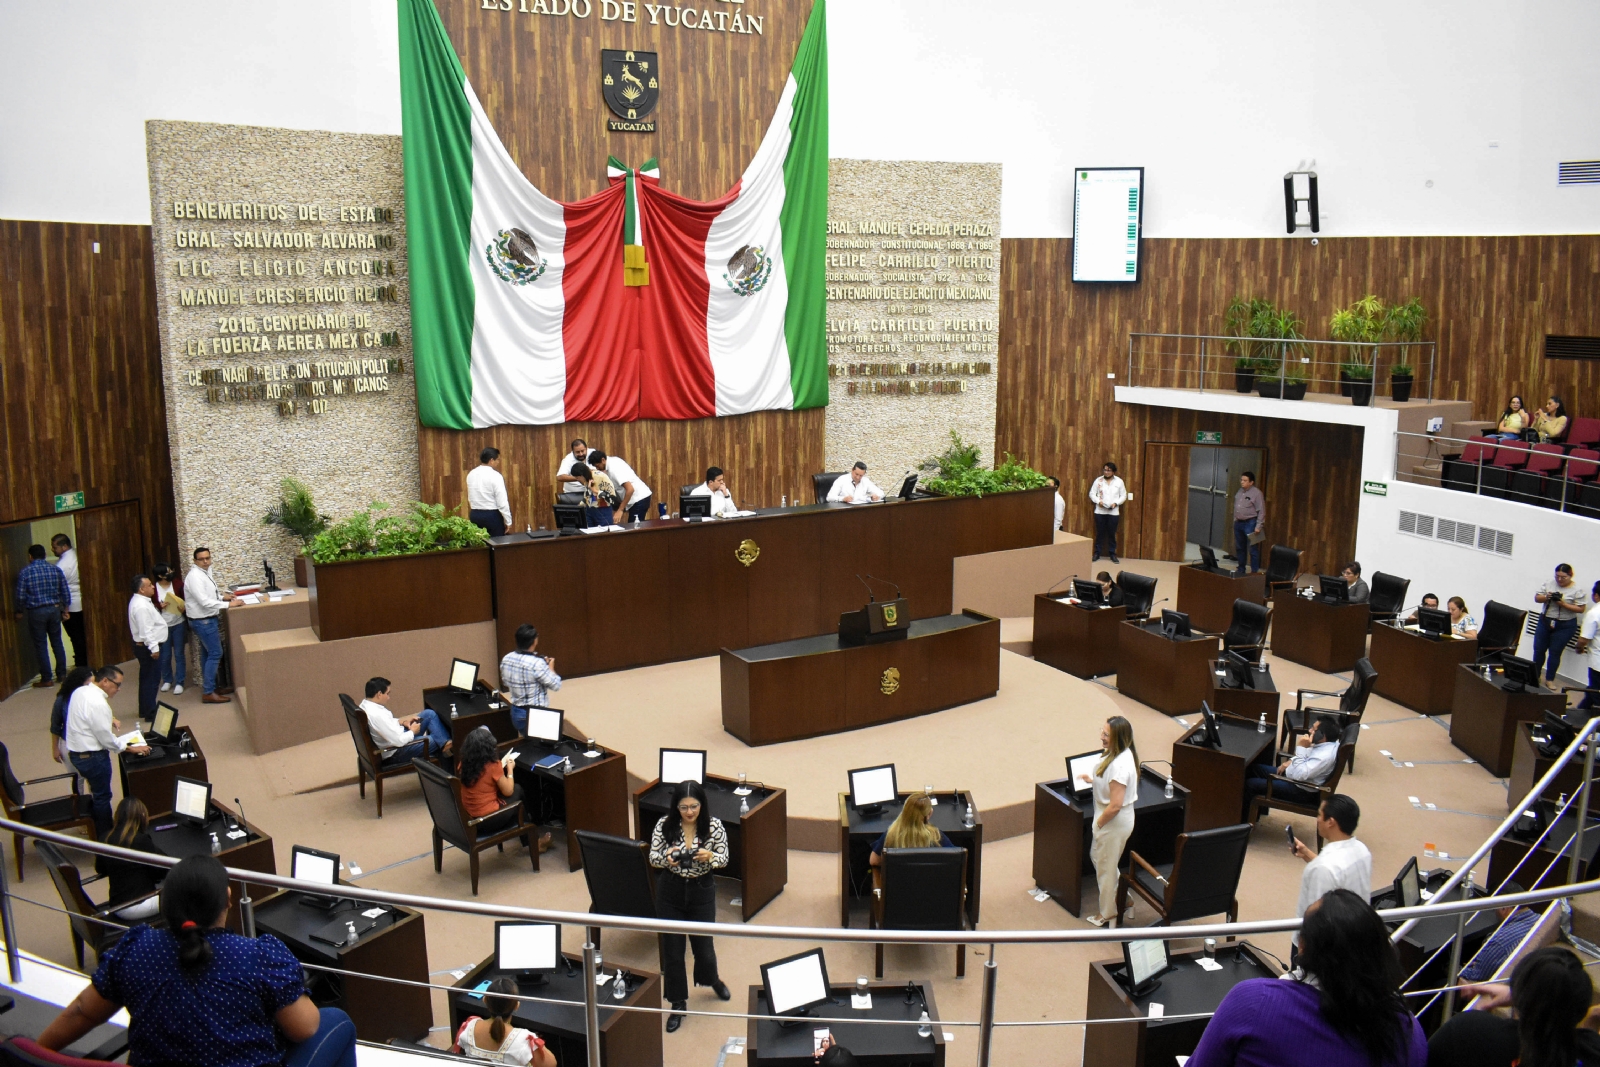 Congreso de Yucatán analiza nombrar a la lengua maya como oficial